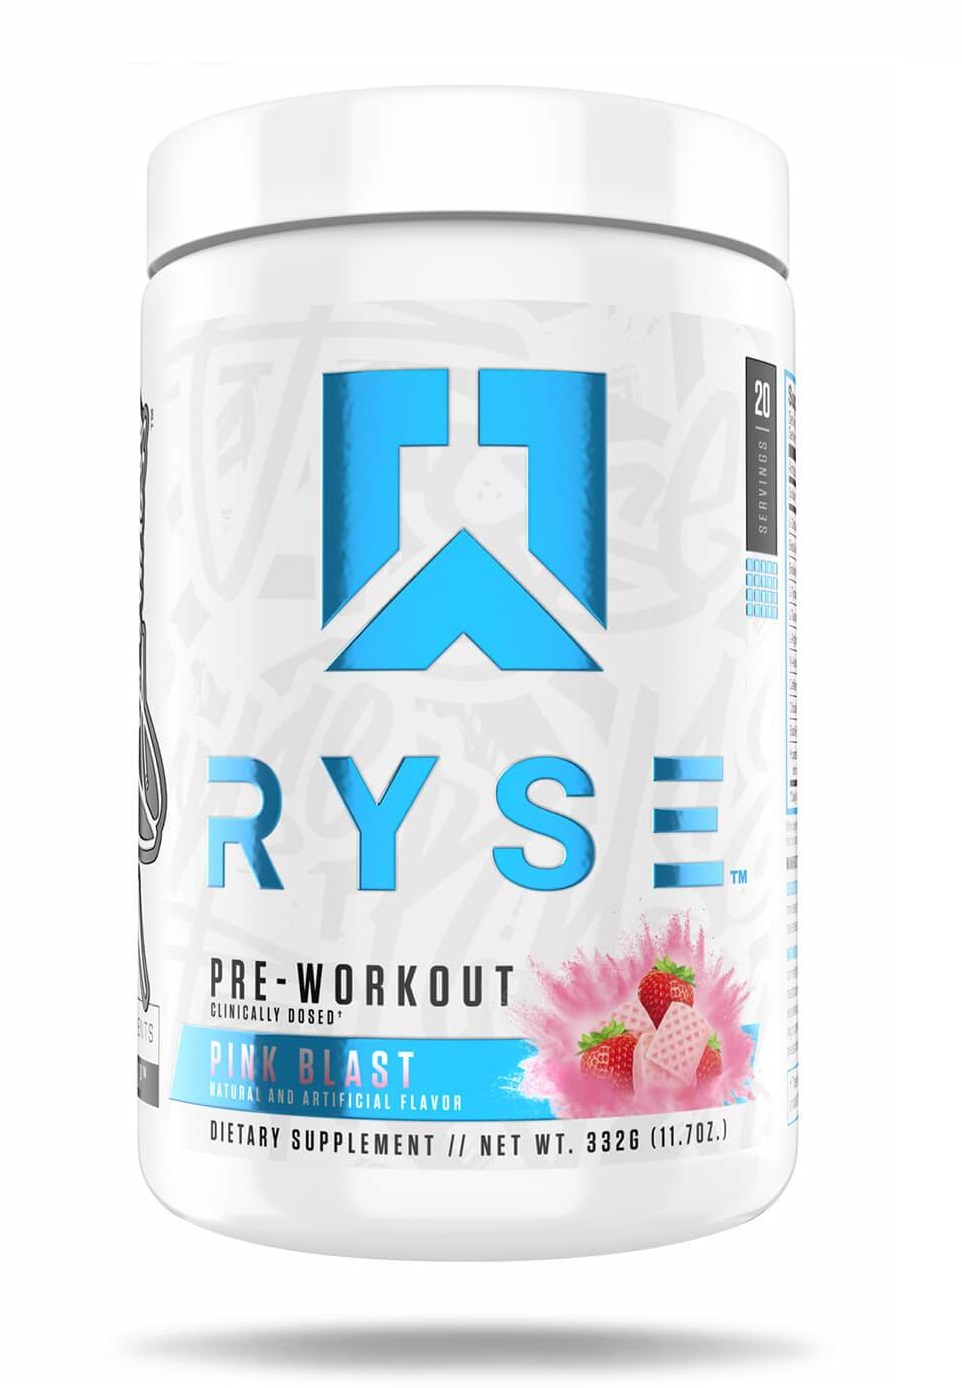 RYSE Pre-Workout